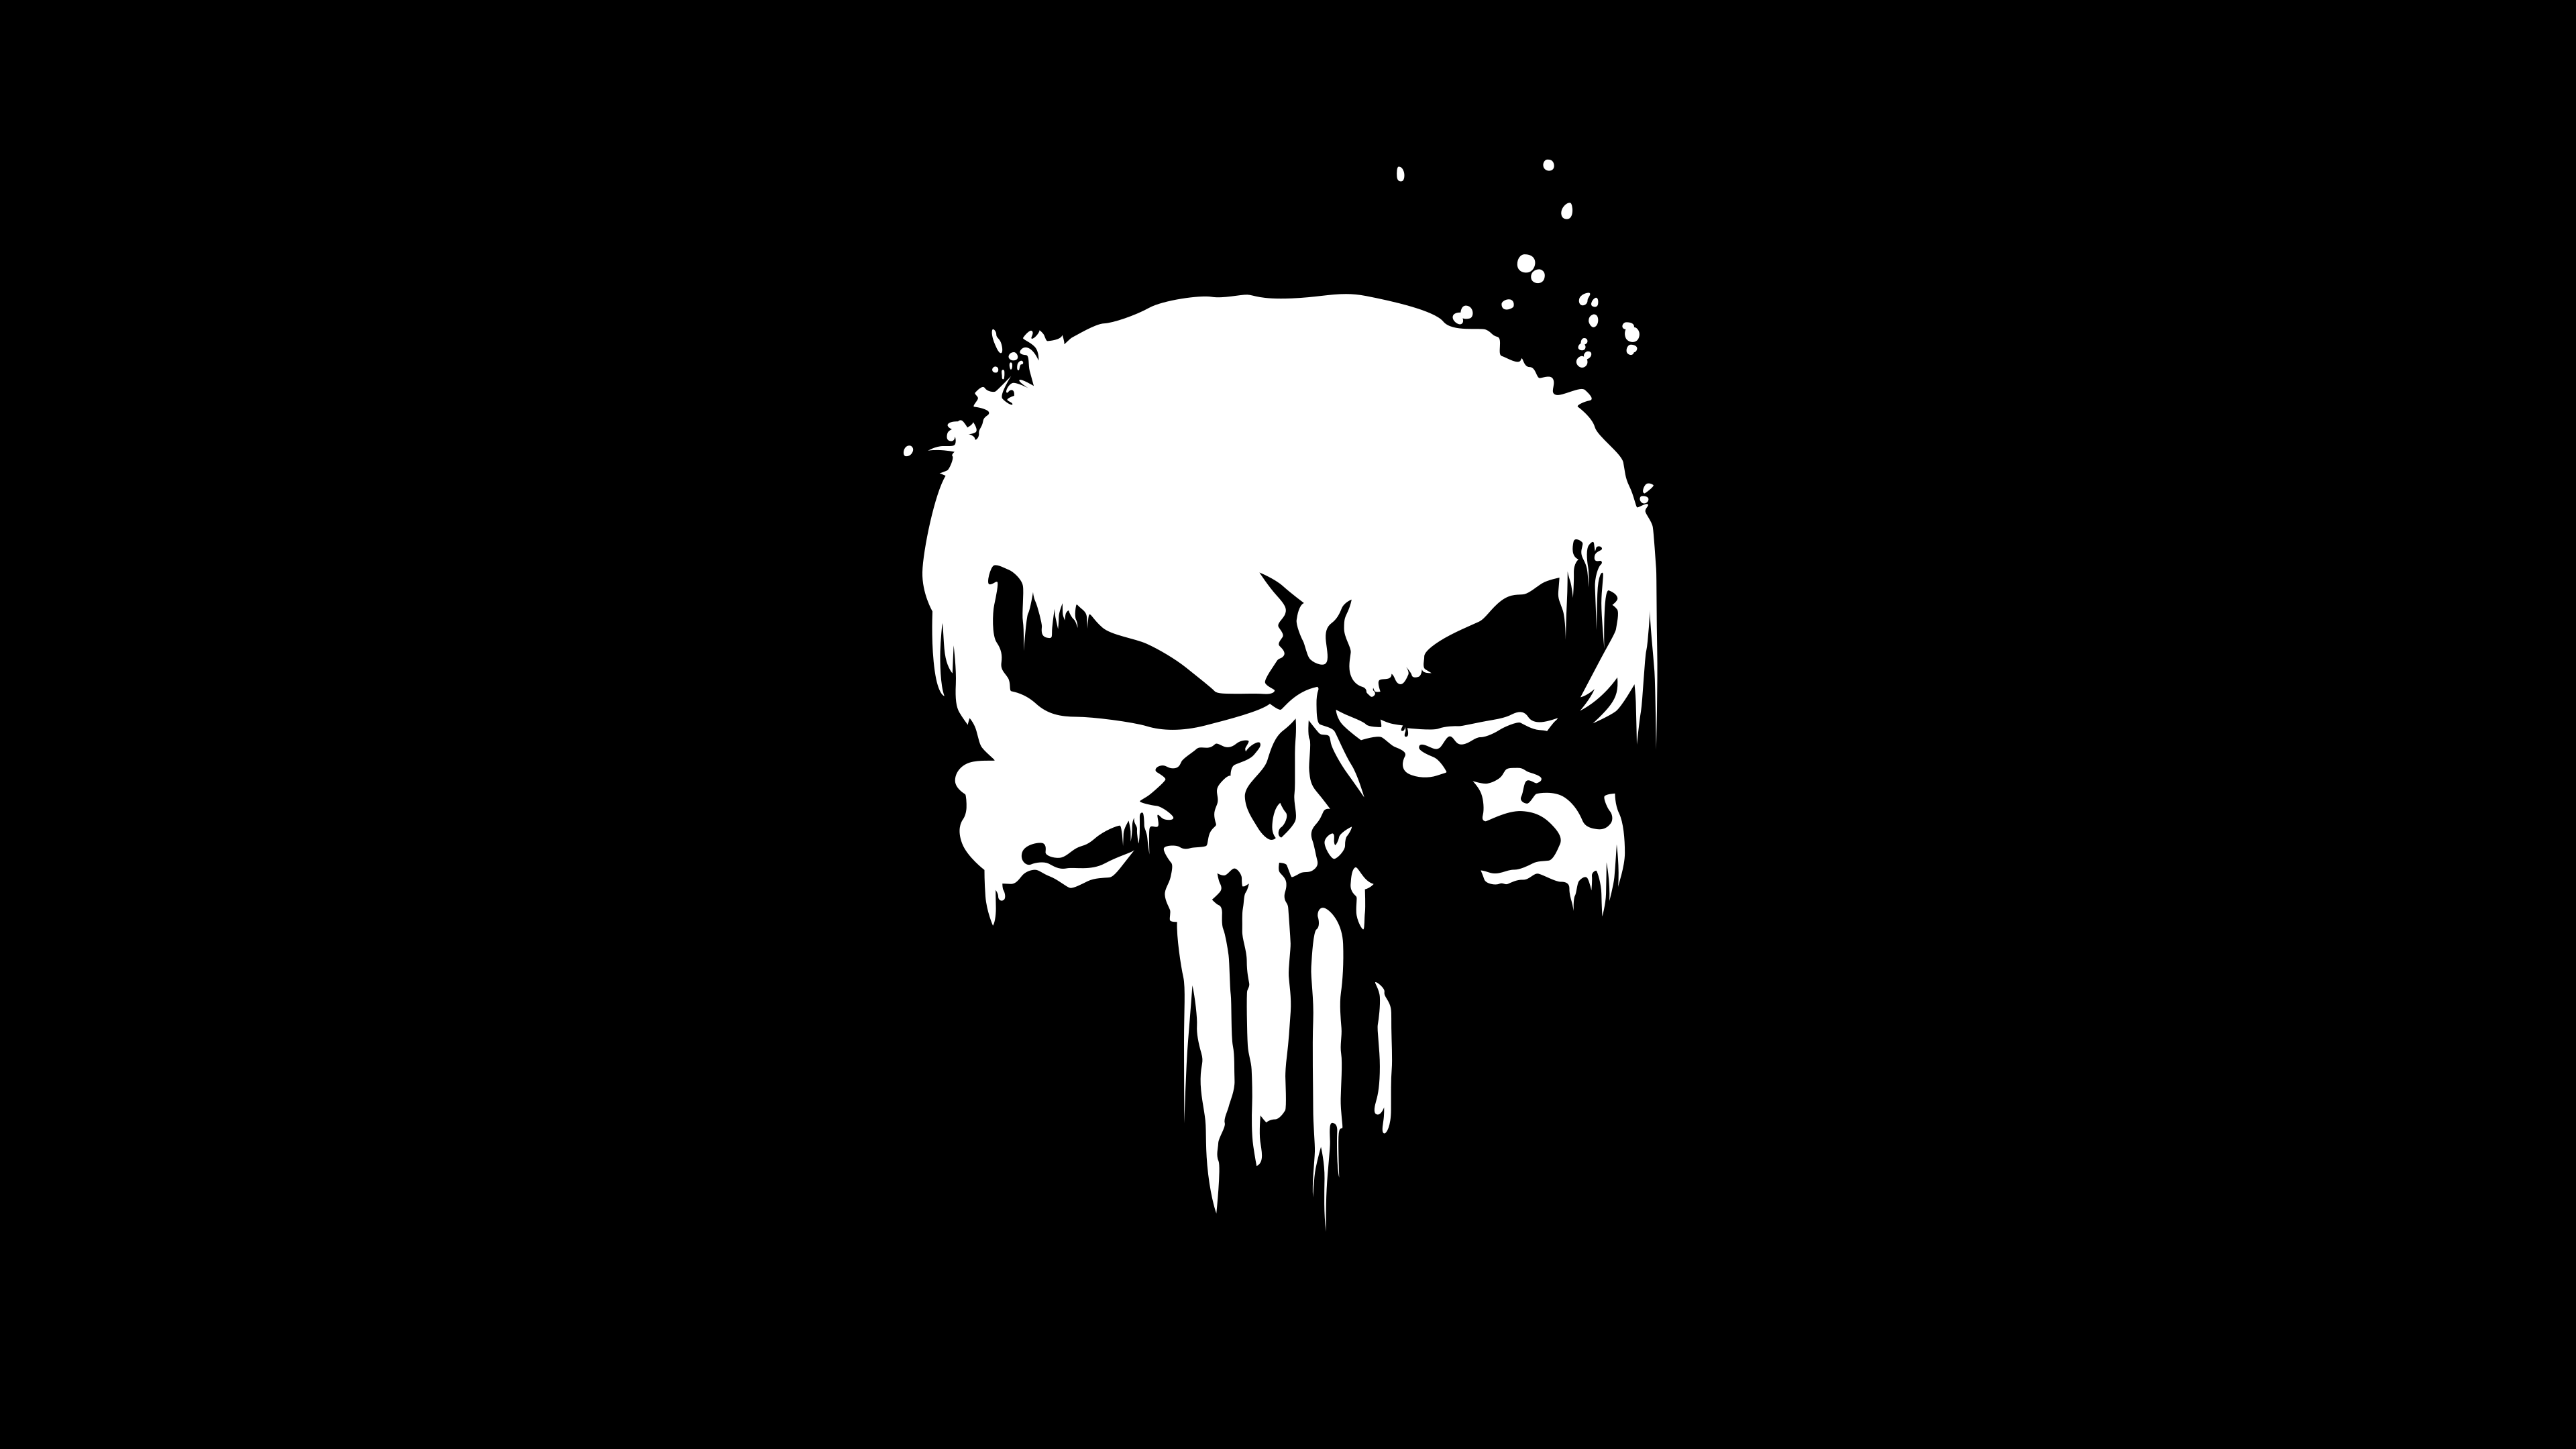 The Punisher 4K Wallpaper, Marvel Comics, Skull, Black Background, Monochrome, Black Dark